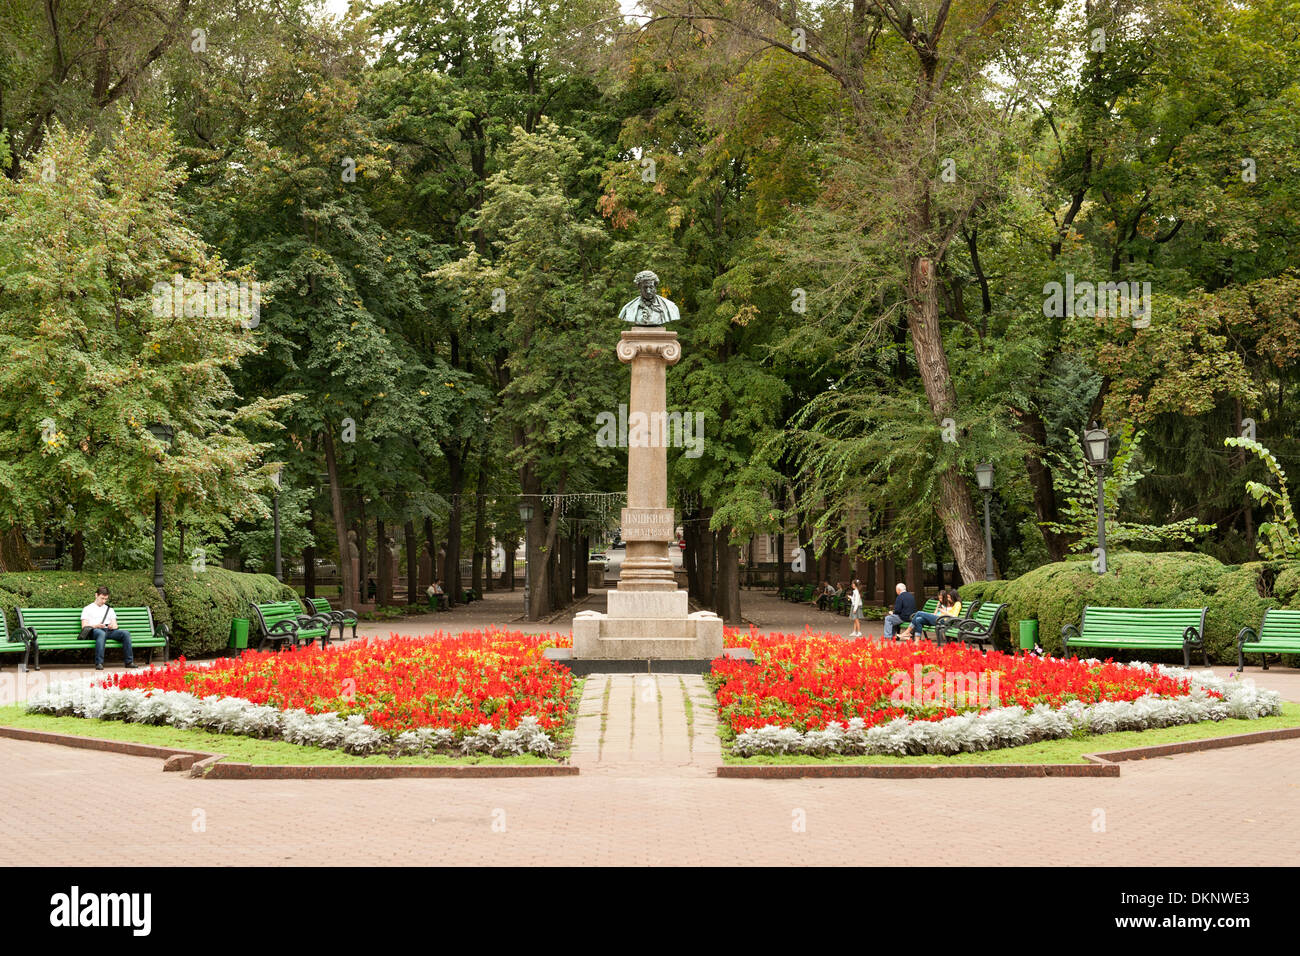 Busto di Aleksandr Pushkin a Parcul Stefan cel Mare (Stefano il Grande Parco) a Chisinau, capitale della Moldavia in Europa Orientale. Foto Stock